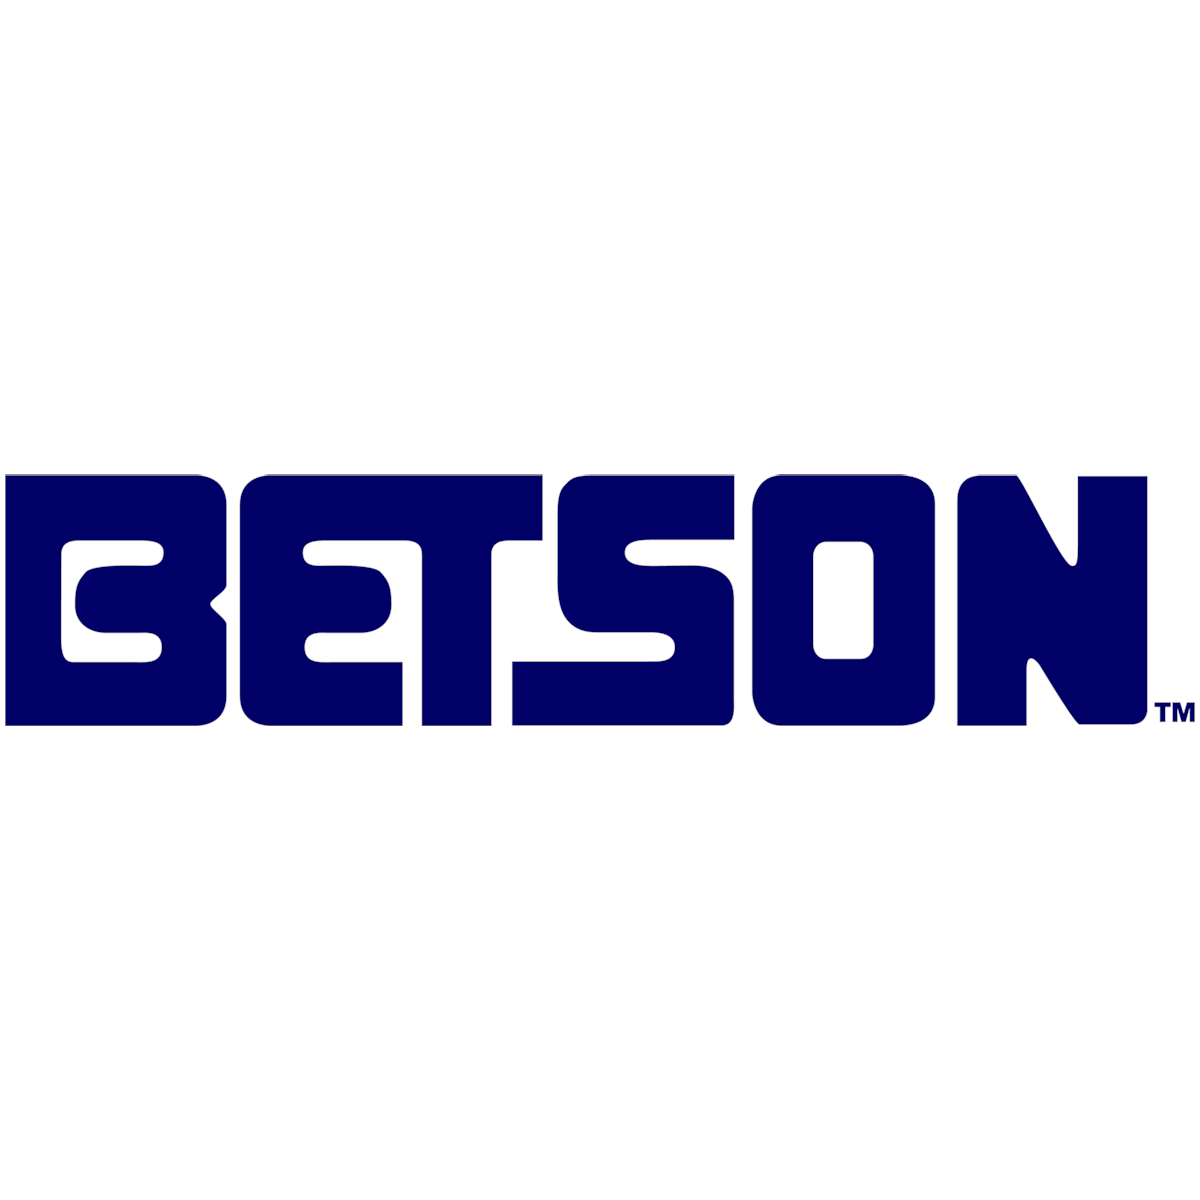 Betson Logo